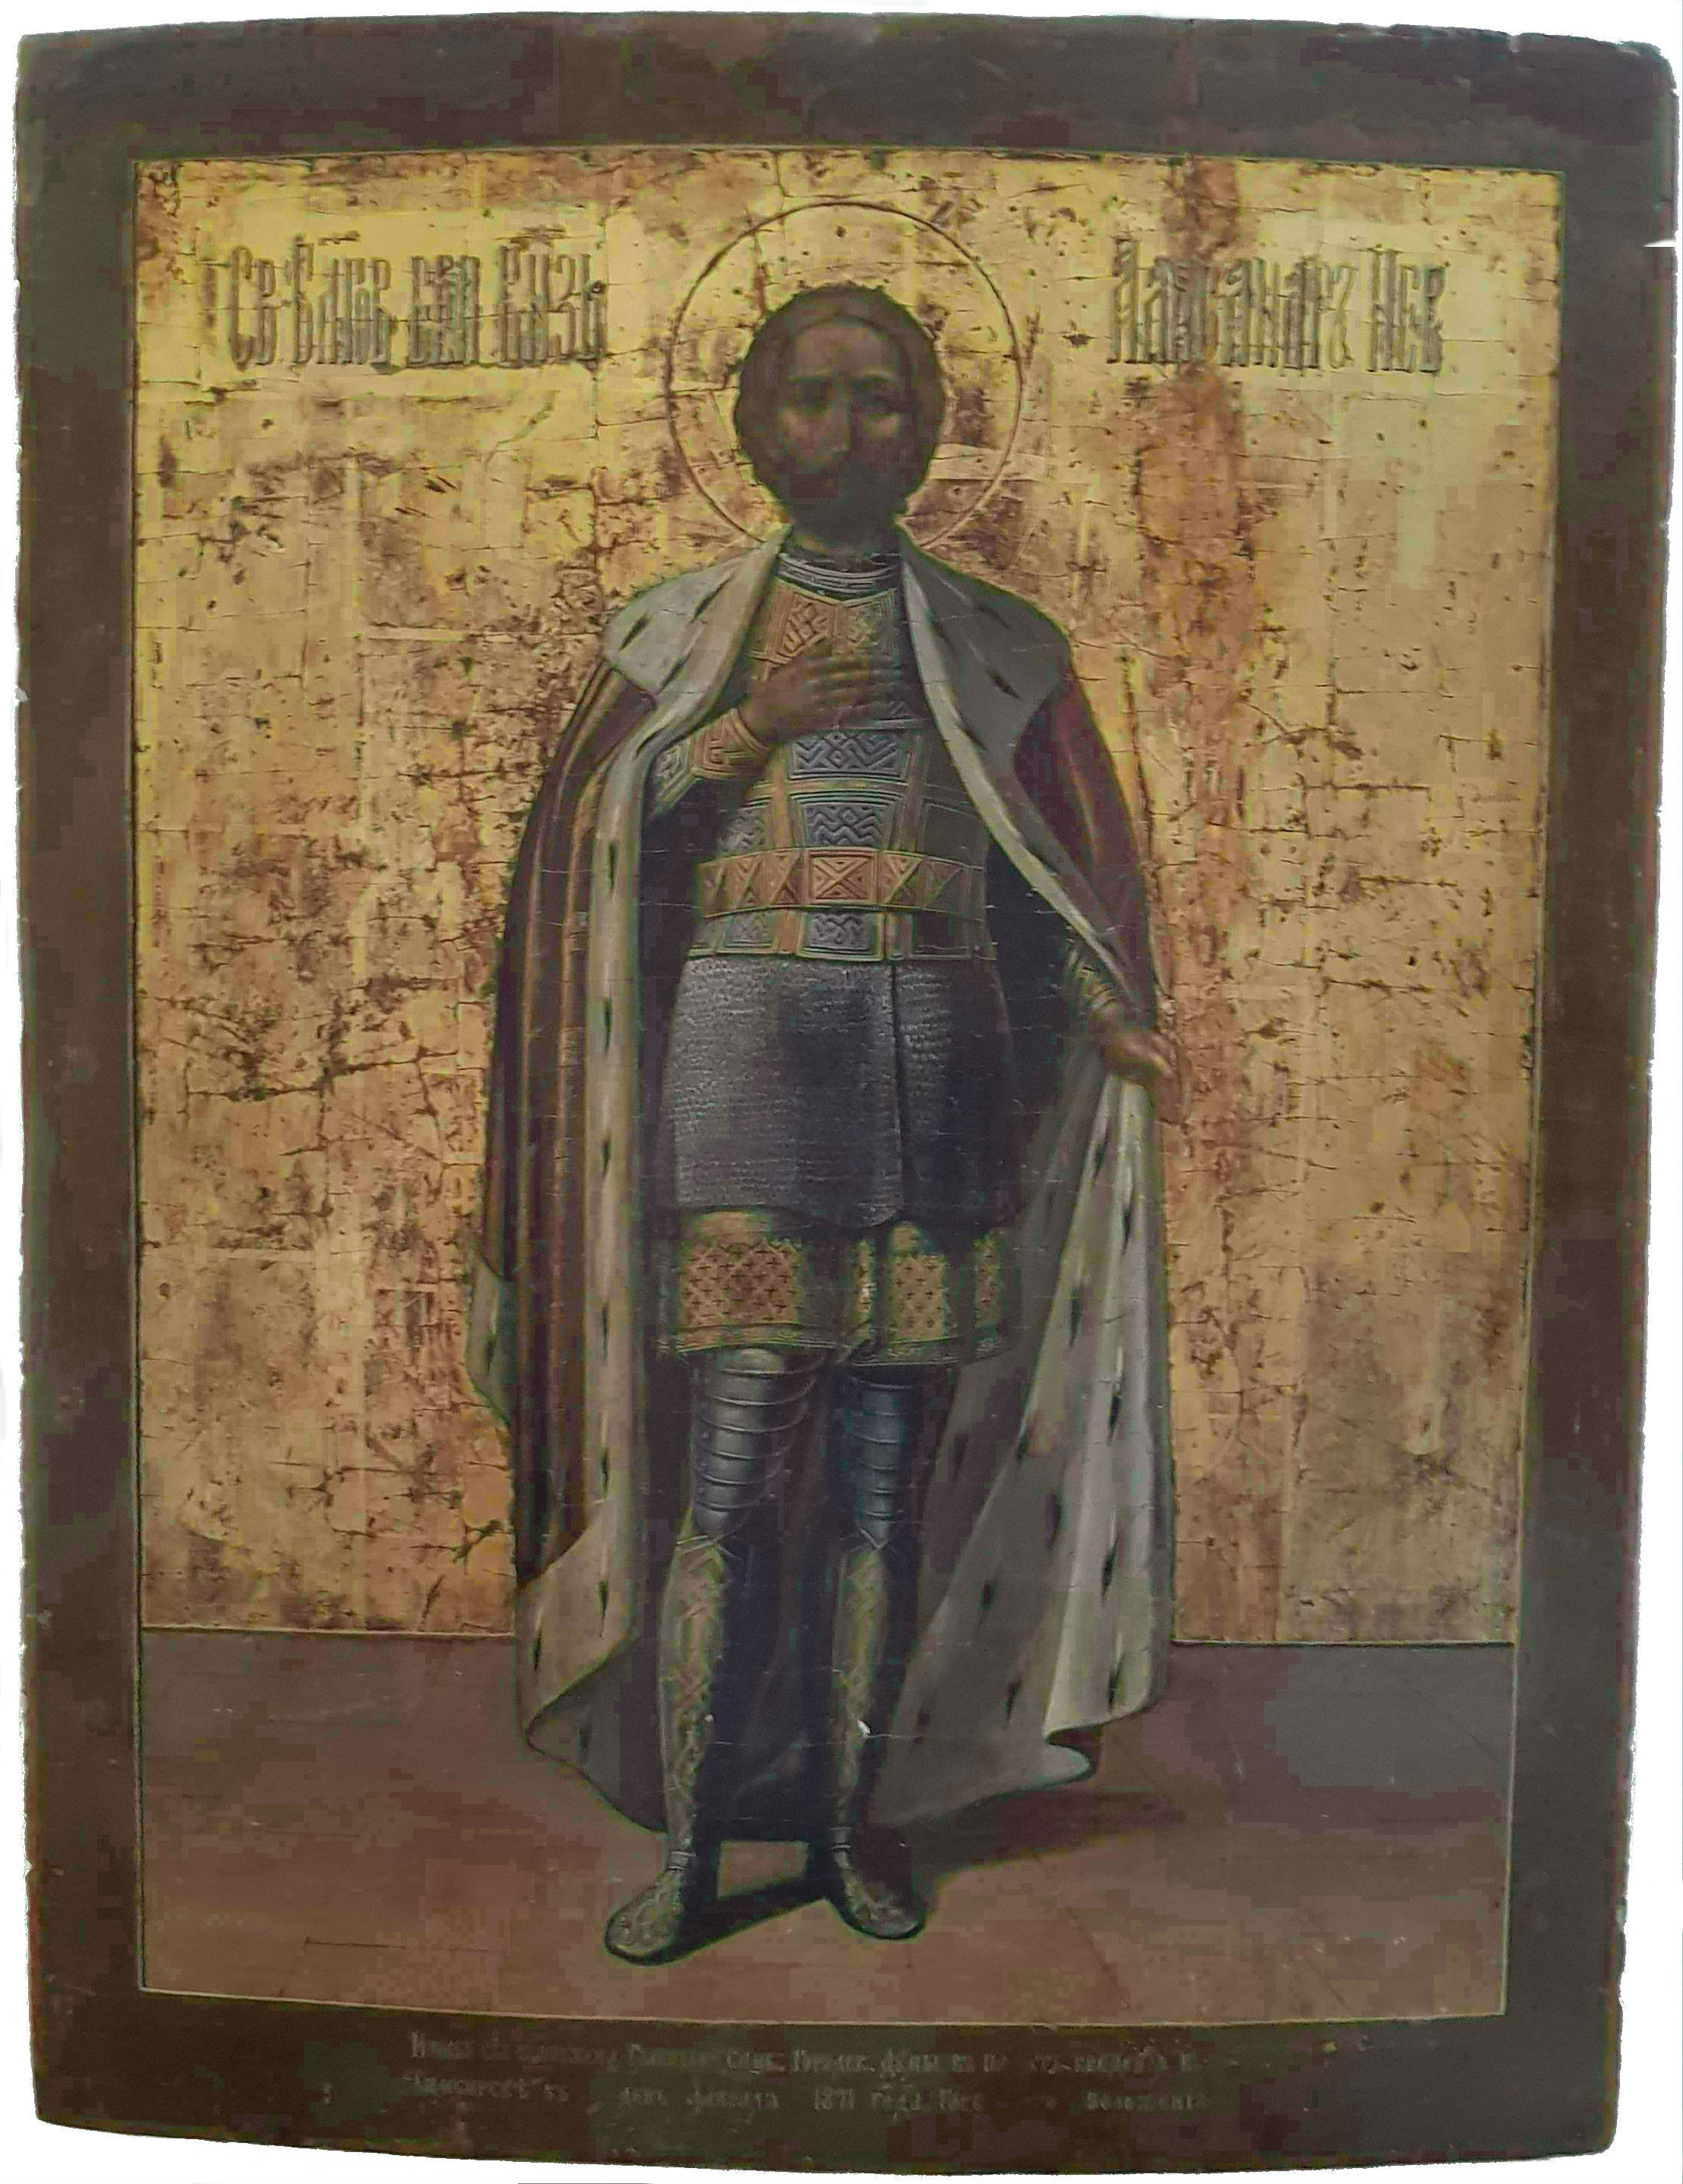 Икона "Святой благоверный князь Александр Невский", около 1871 года, Симбирск. (Коллекция автора)